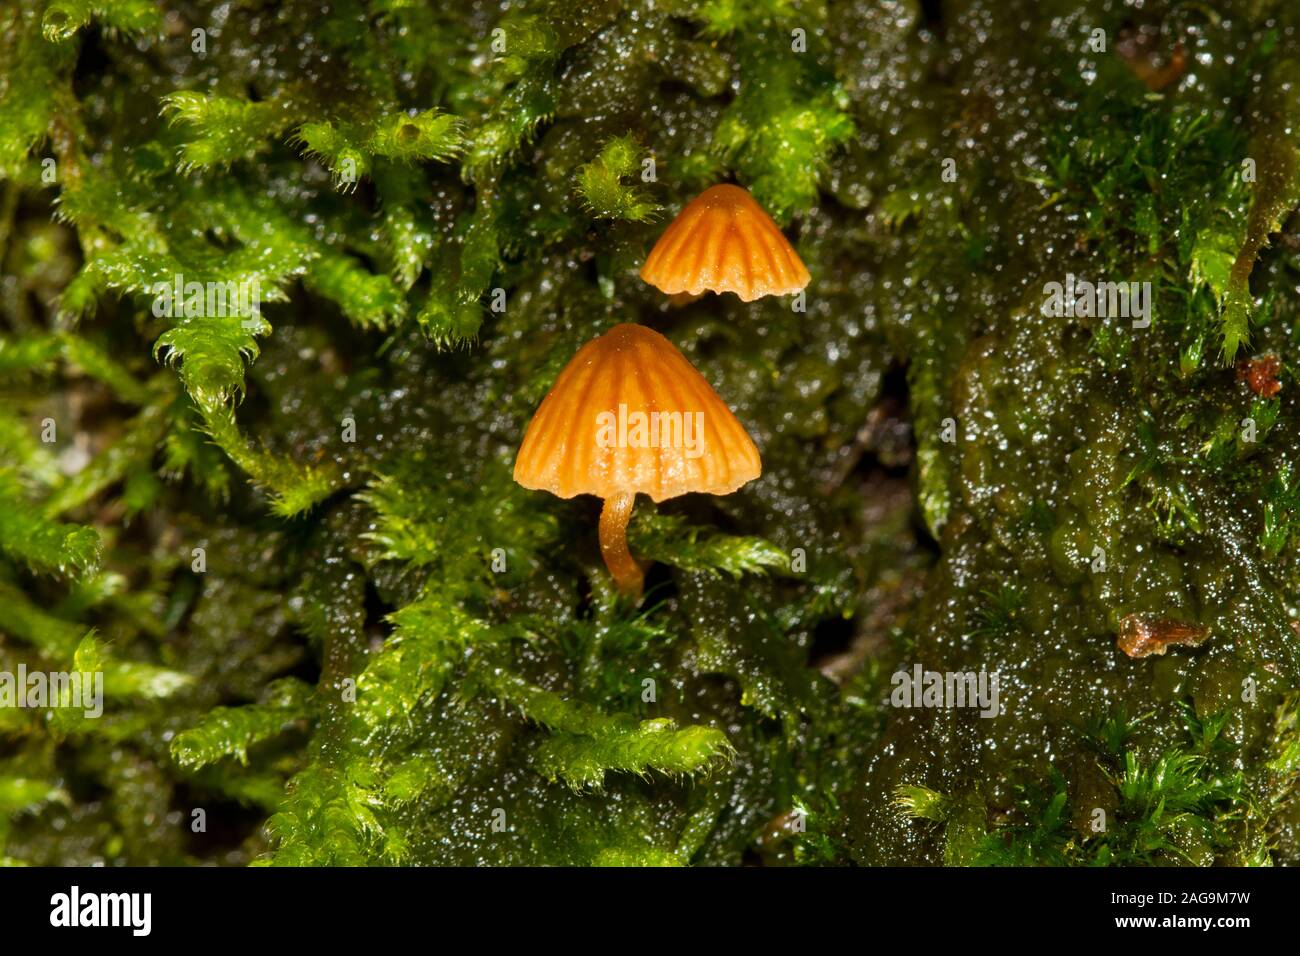 Zwei sehr kleine, braune Champignons, wahrscheinlich Moss Glocken, wachsen auf dem Moos bedeckt Stamm einer Eiche Stockfoto